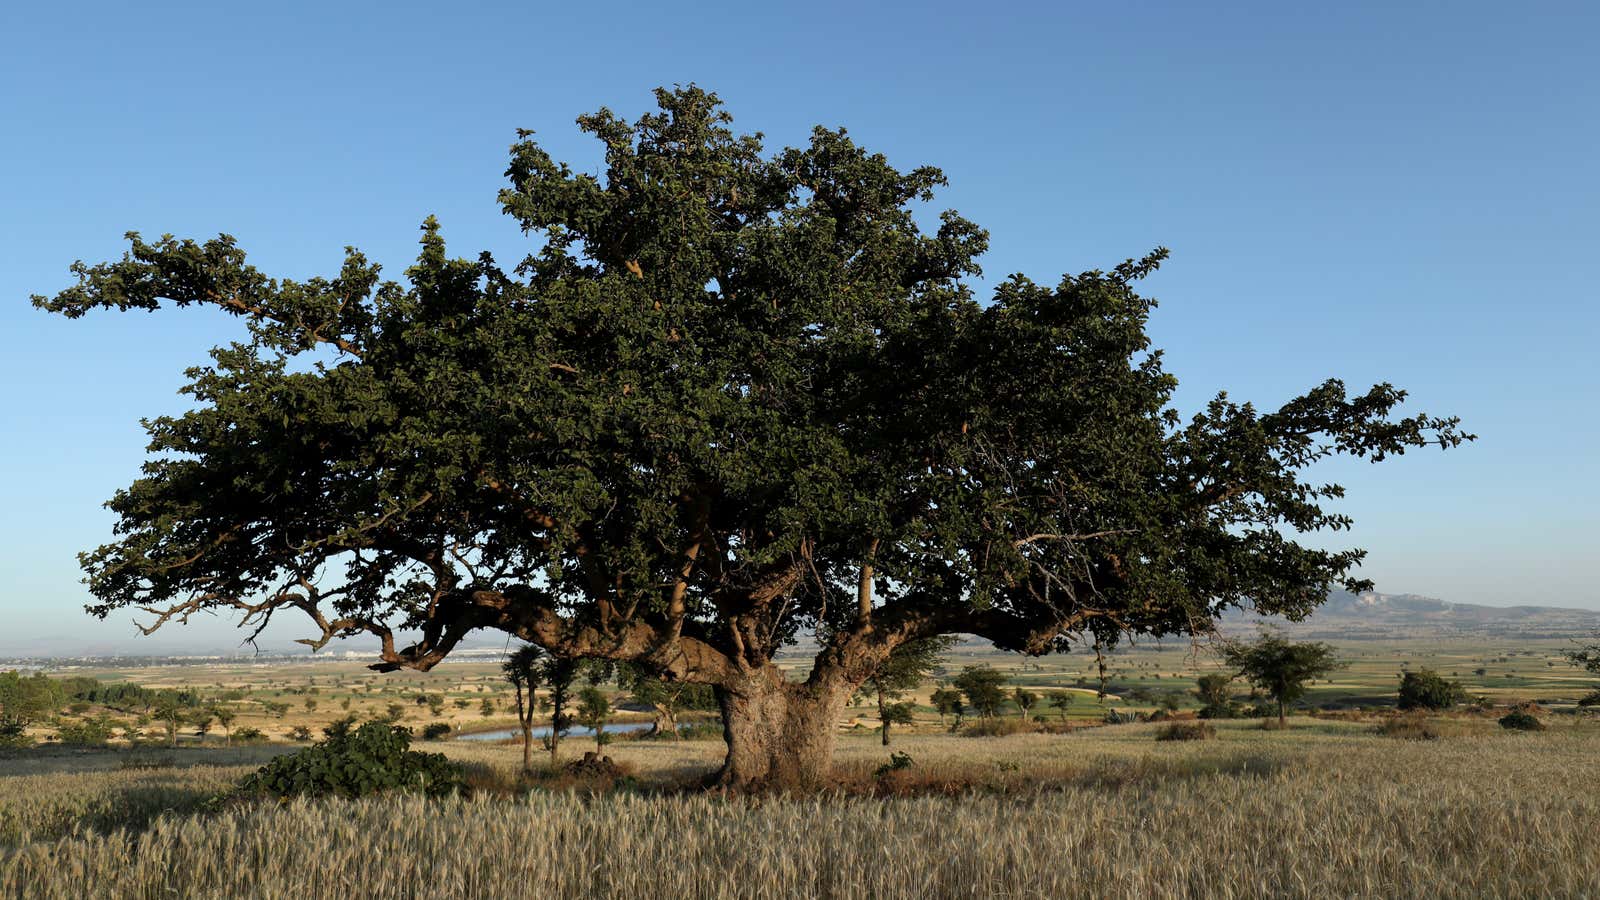 An Odaa tree in the town of Dukem, Oromia region, Ethiopia